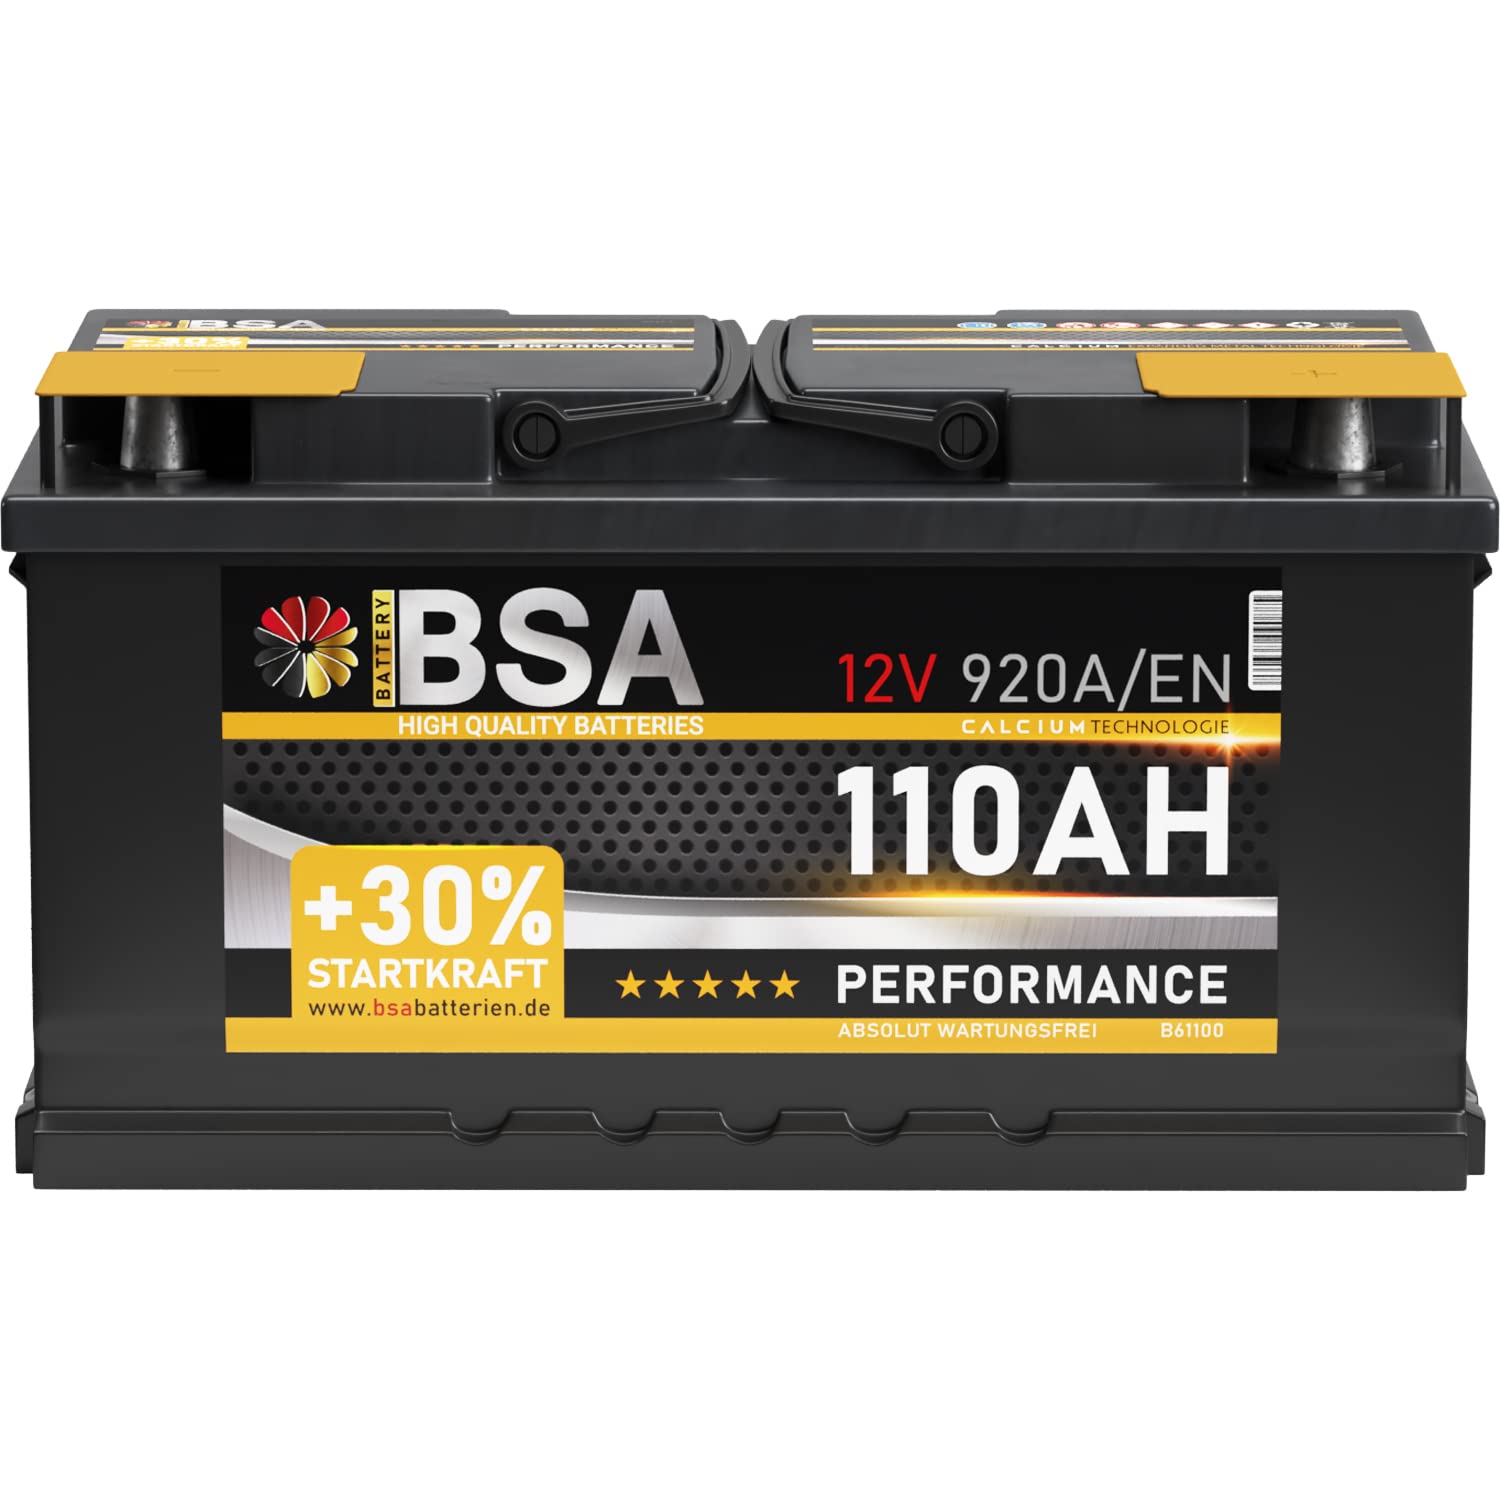 BSA Autobatterie 110Ah 12V 920A/EN ersetzt Batterie 100Ah 90Ah 105Ah 95Ah +30% Startleistung, lead acid von BSA BATTERY HIGH QUALITY BATTERIES